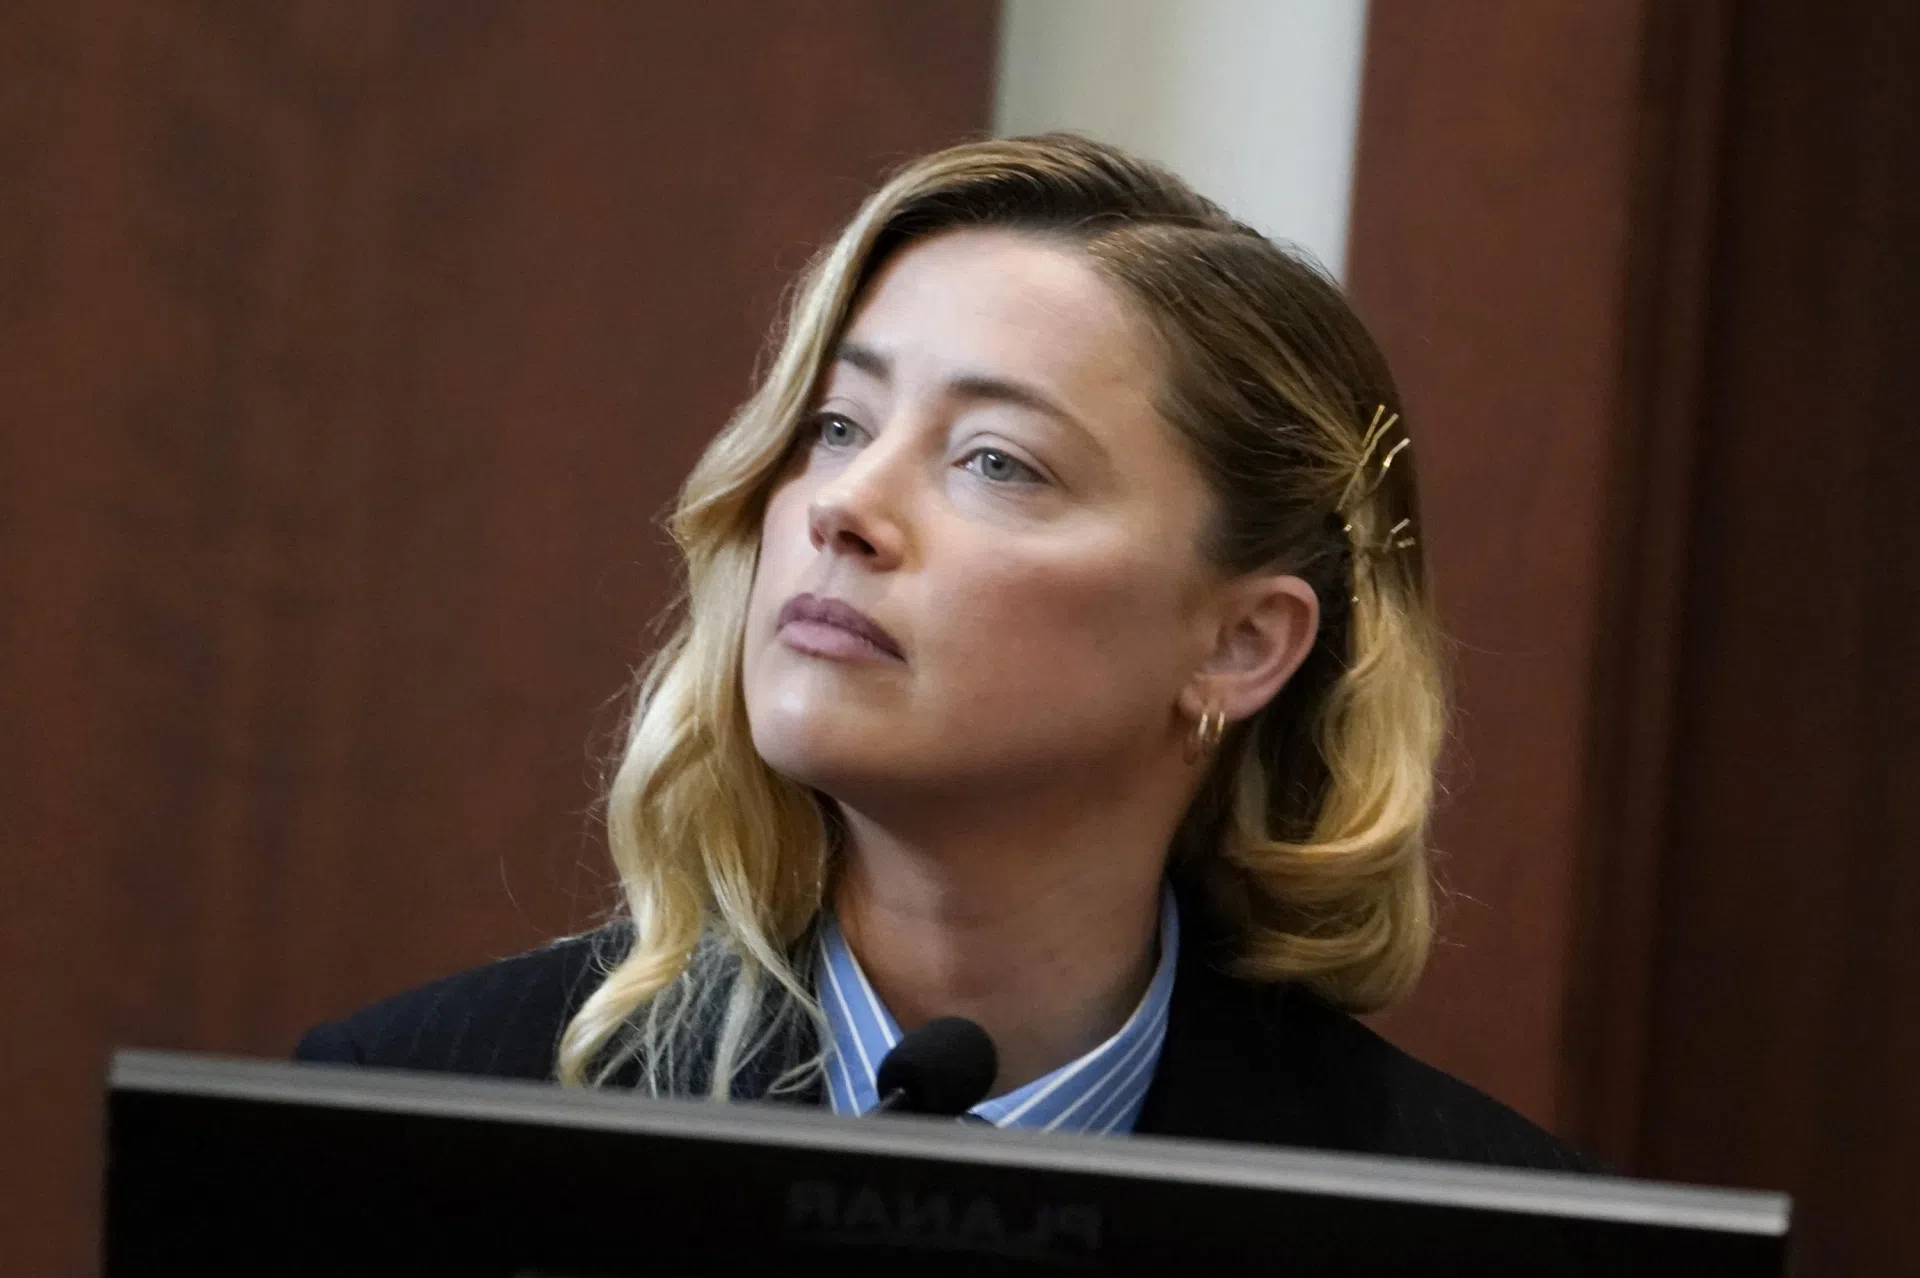 Phán quyết của vụ kiện cả thế giới quan tâm: Dân tình hả hê, Amber Heard lâm cảnh đáng sợ hậu thua Johnny Depp